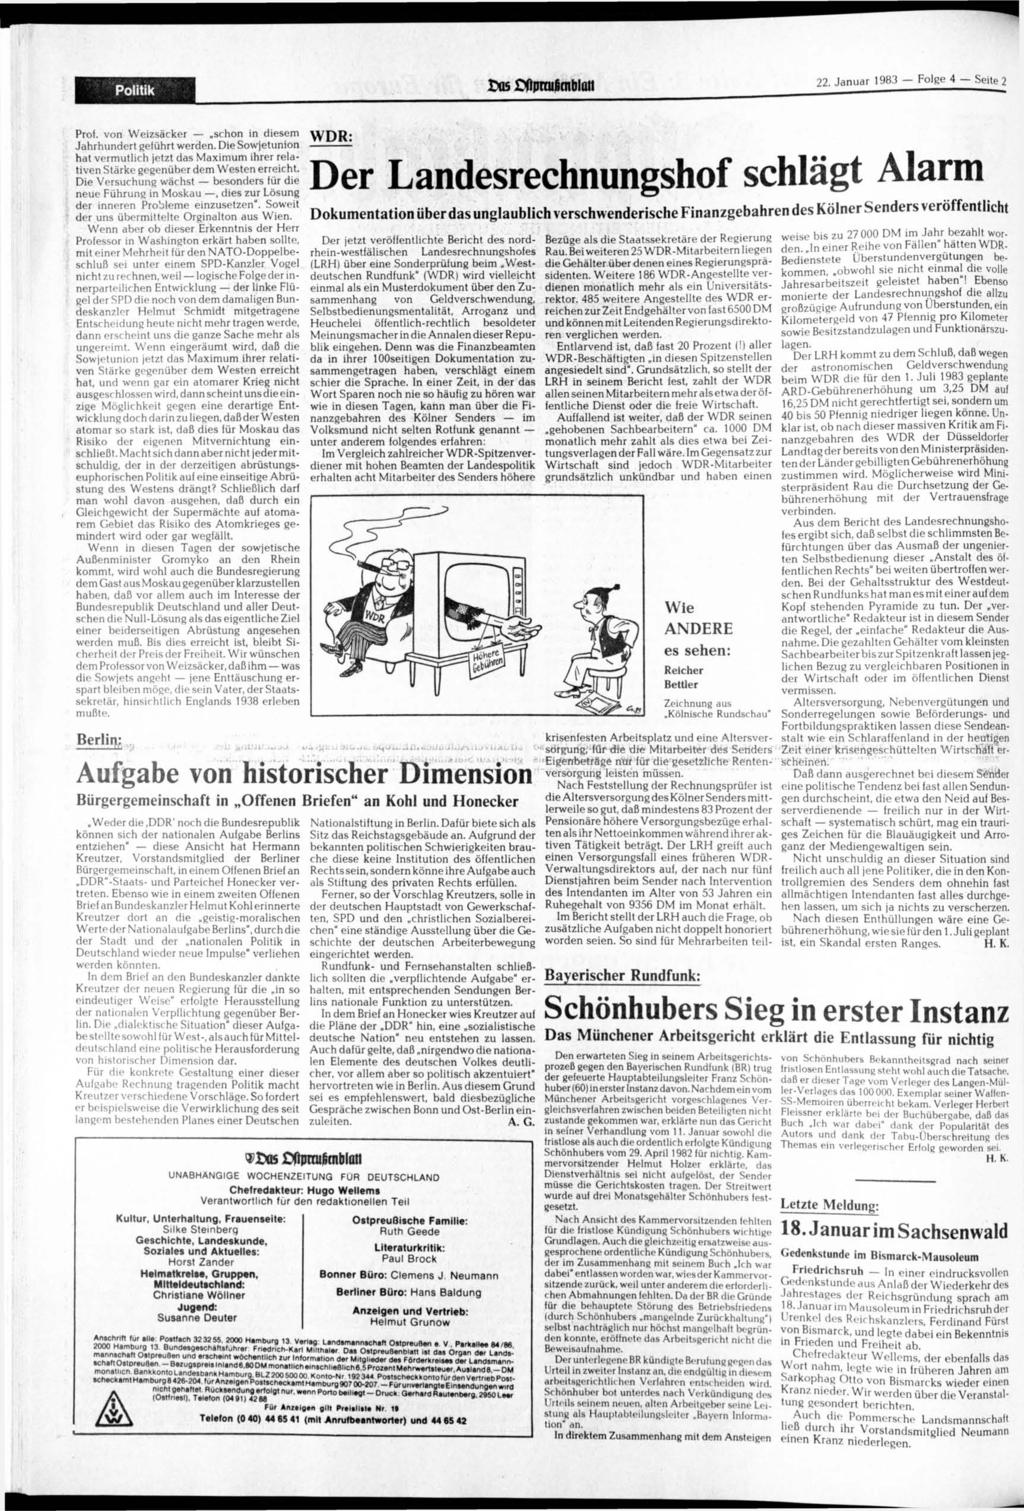 Politik tti5 ftpnu0mblati 22. 1983 Folge 4 Seite 2 Prof. von Weizsäcker schon in diesem Jahrhundert geführt werden.